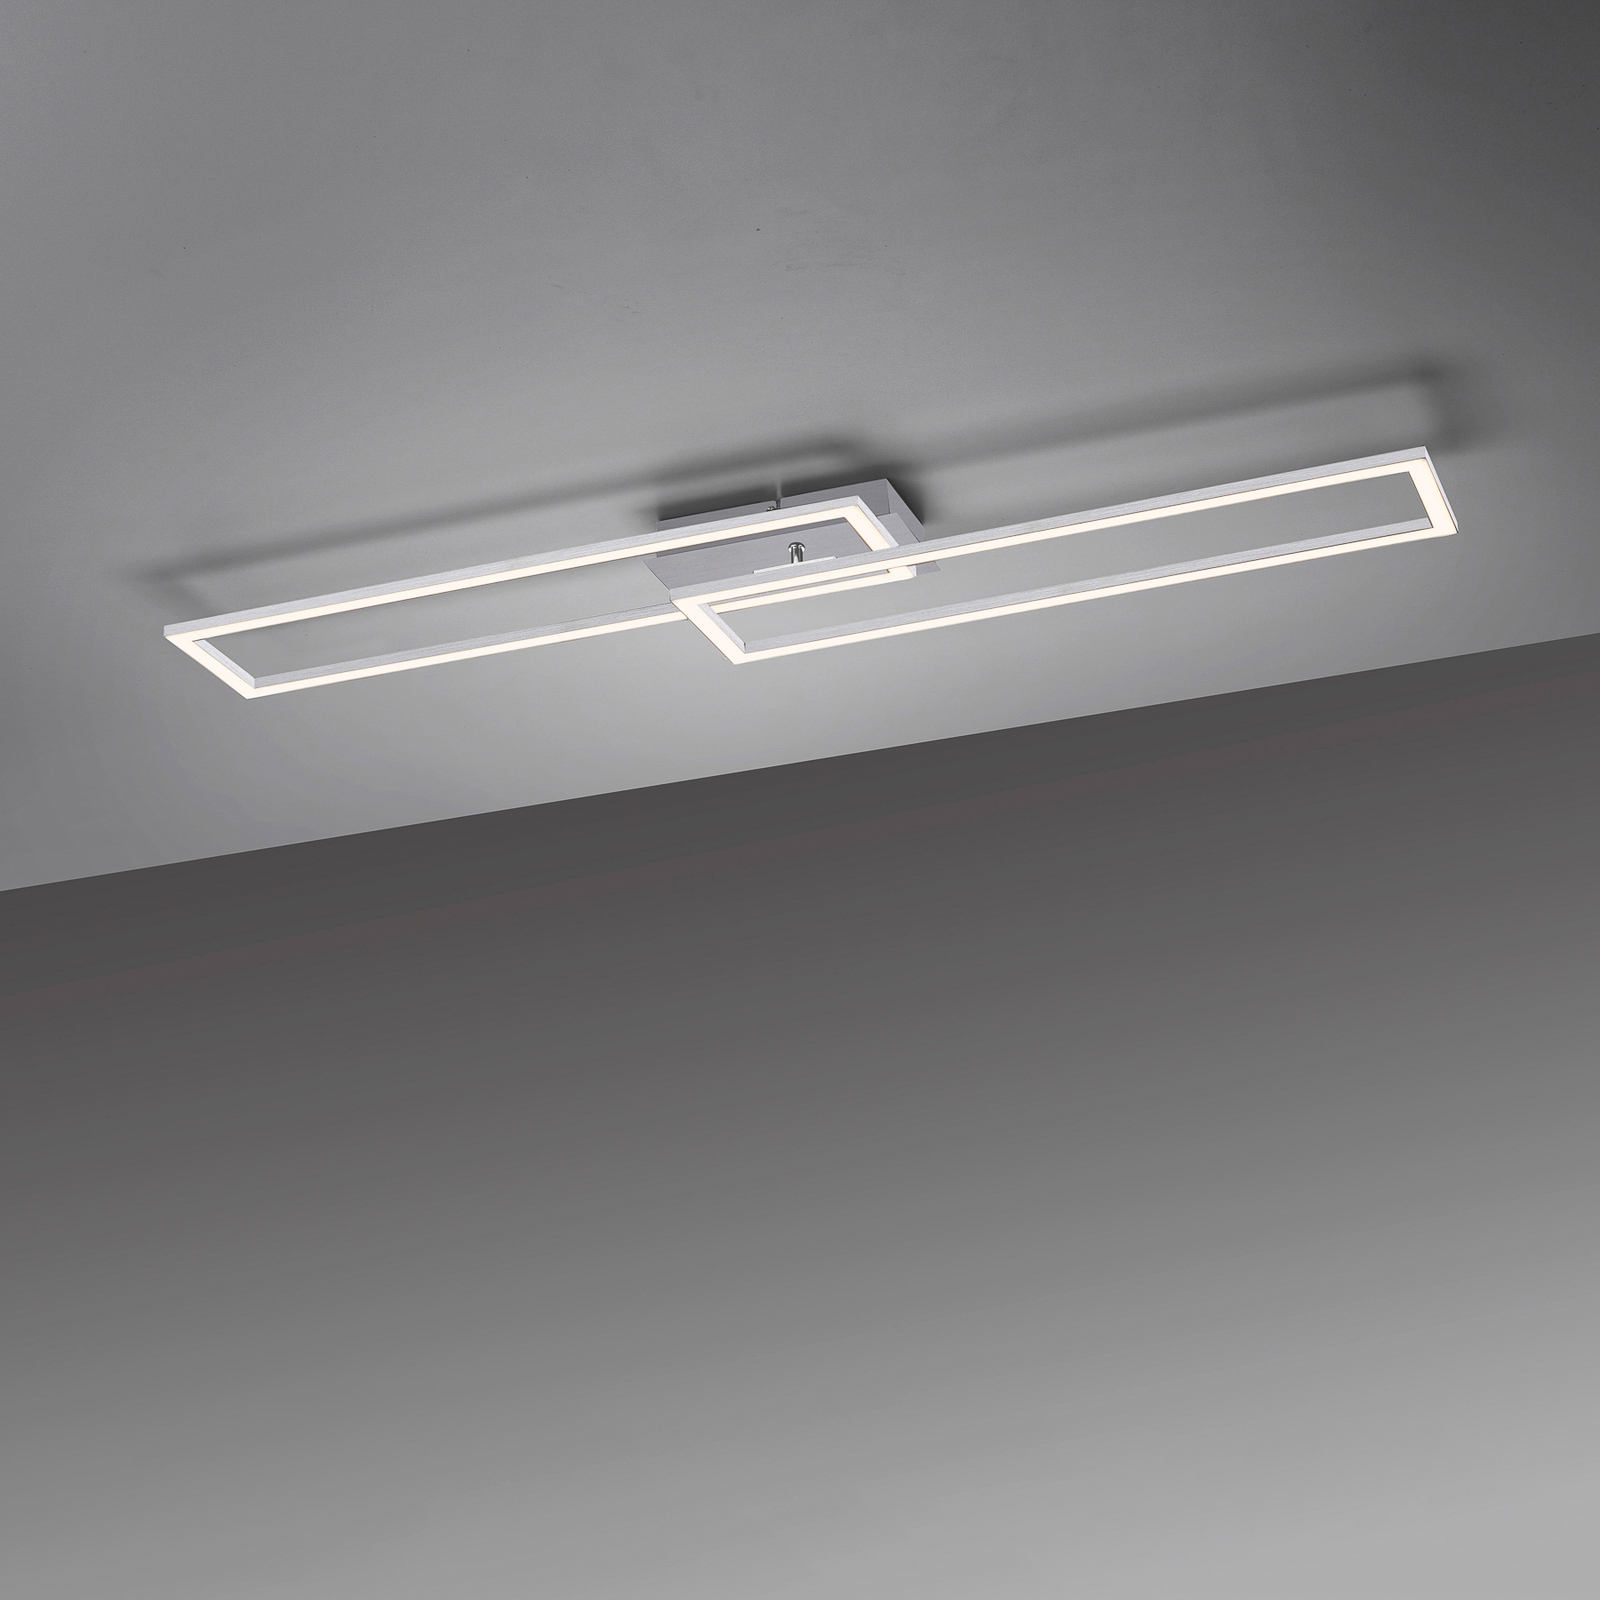 LED-taklampa Iven, stål, dim, 101,6x19,8cm